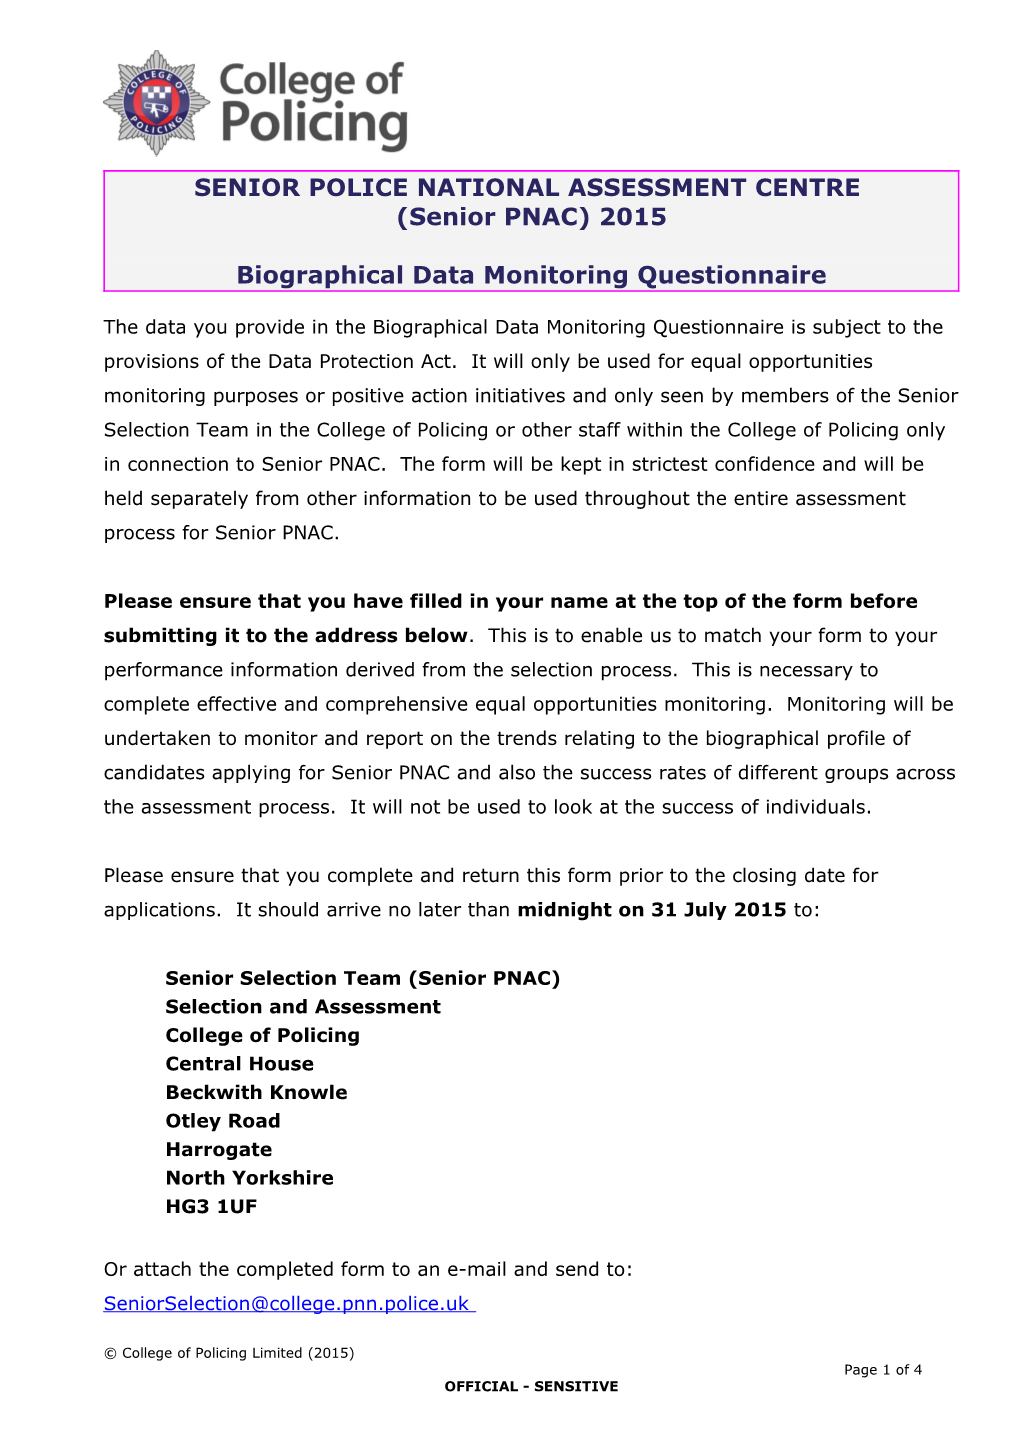 Senior PNAC Biographical Monitoring Form